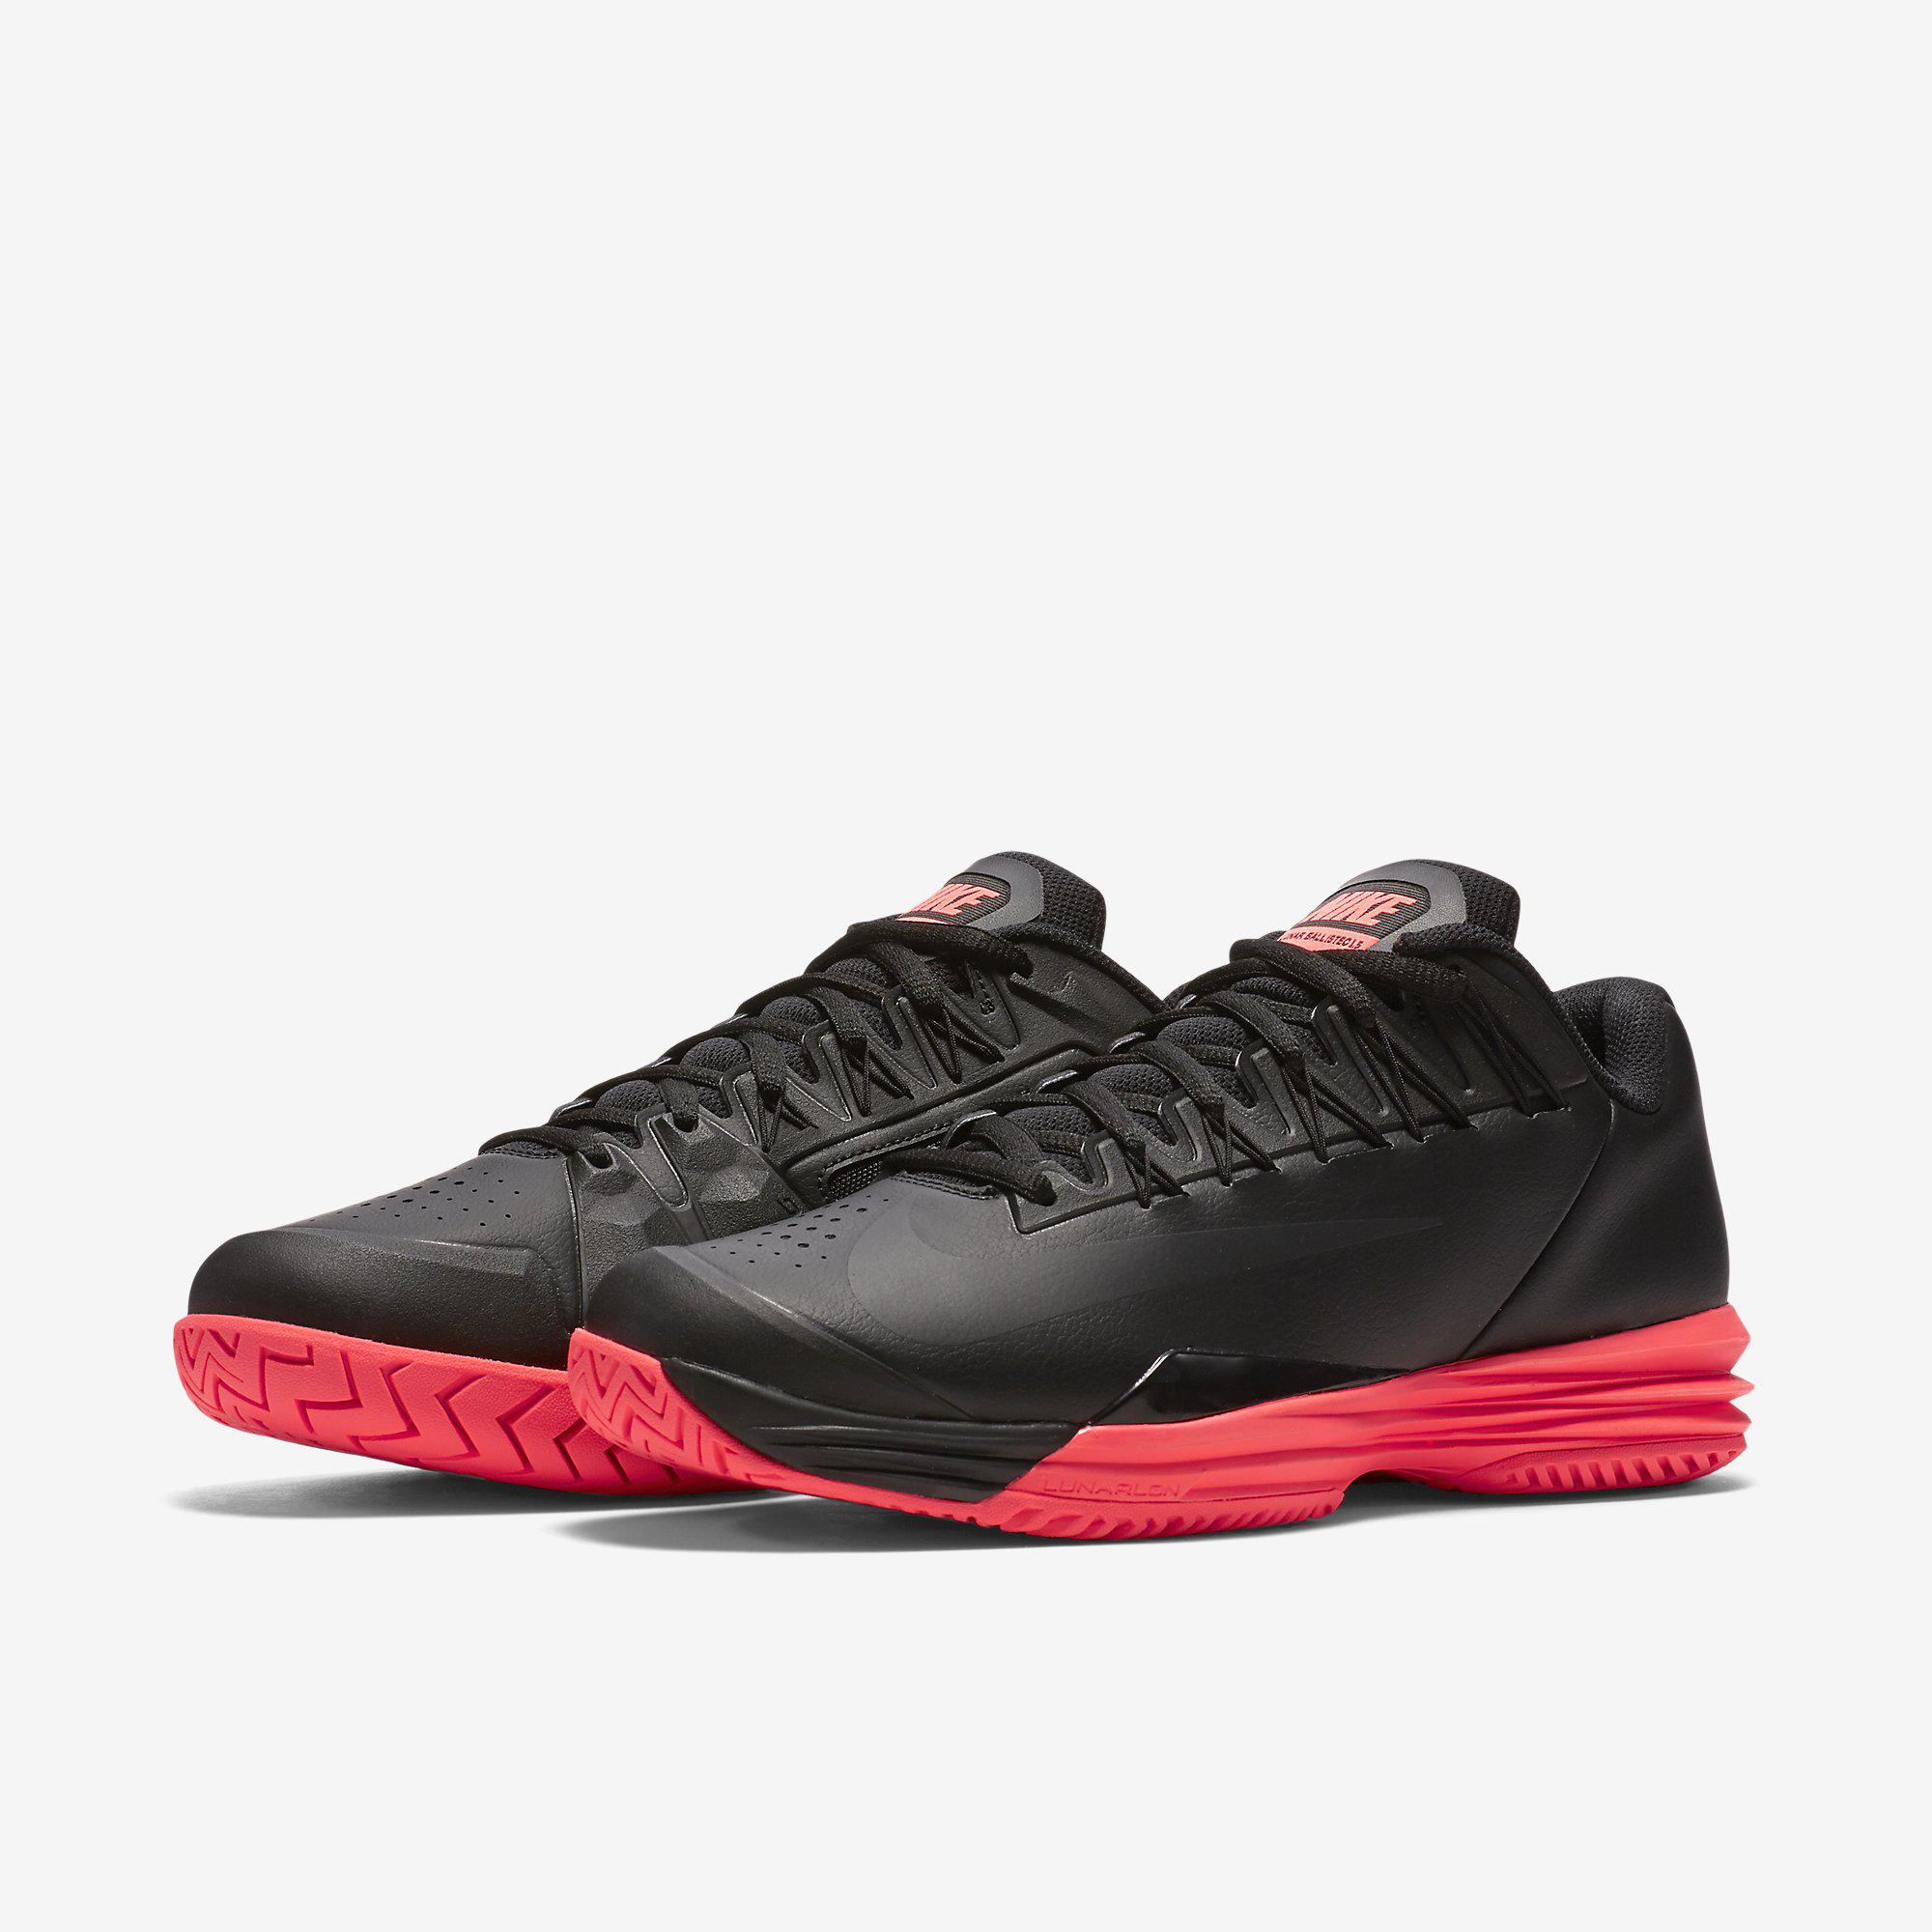 Es decir para ver luz de sol Nike Mens Lunar Ballistec 1.5 Tennis Shoes - Black/Hot Lava - Tennisnuts.com